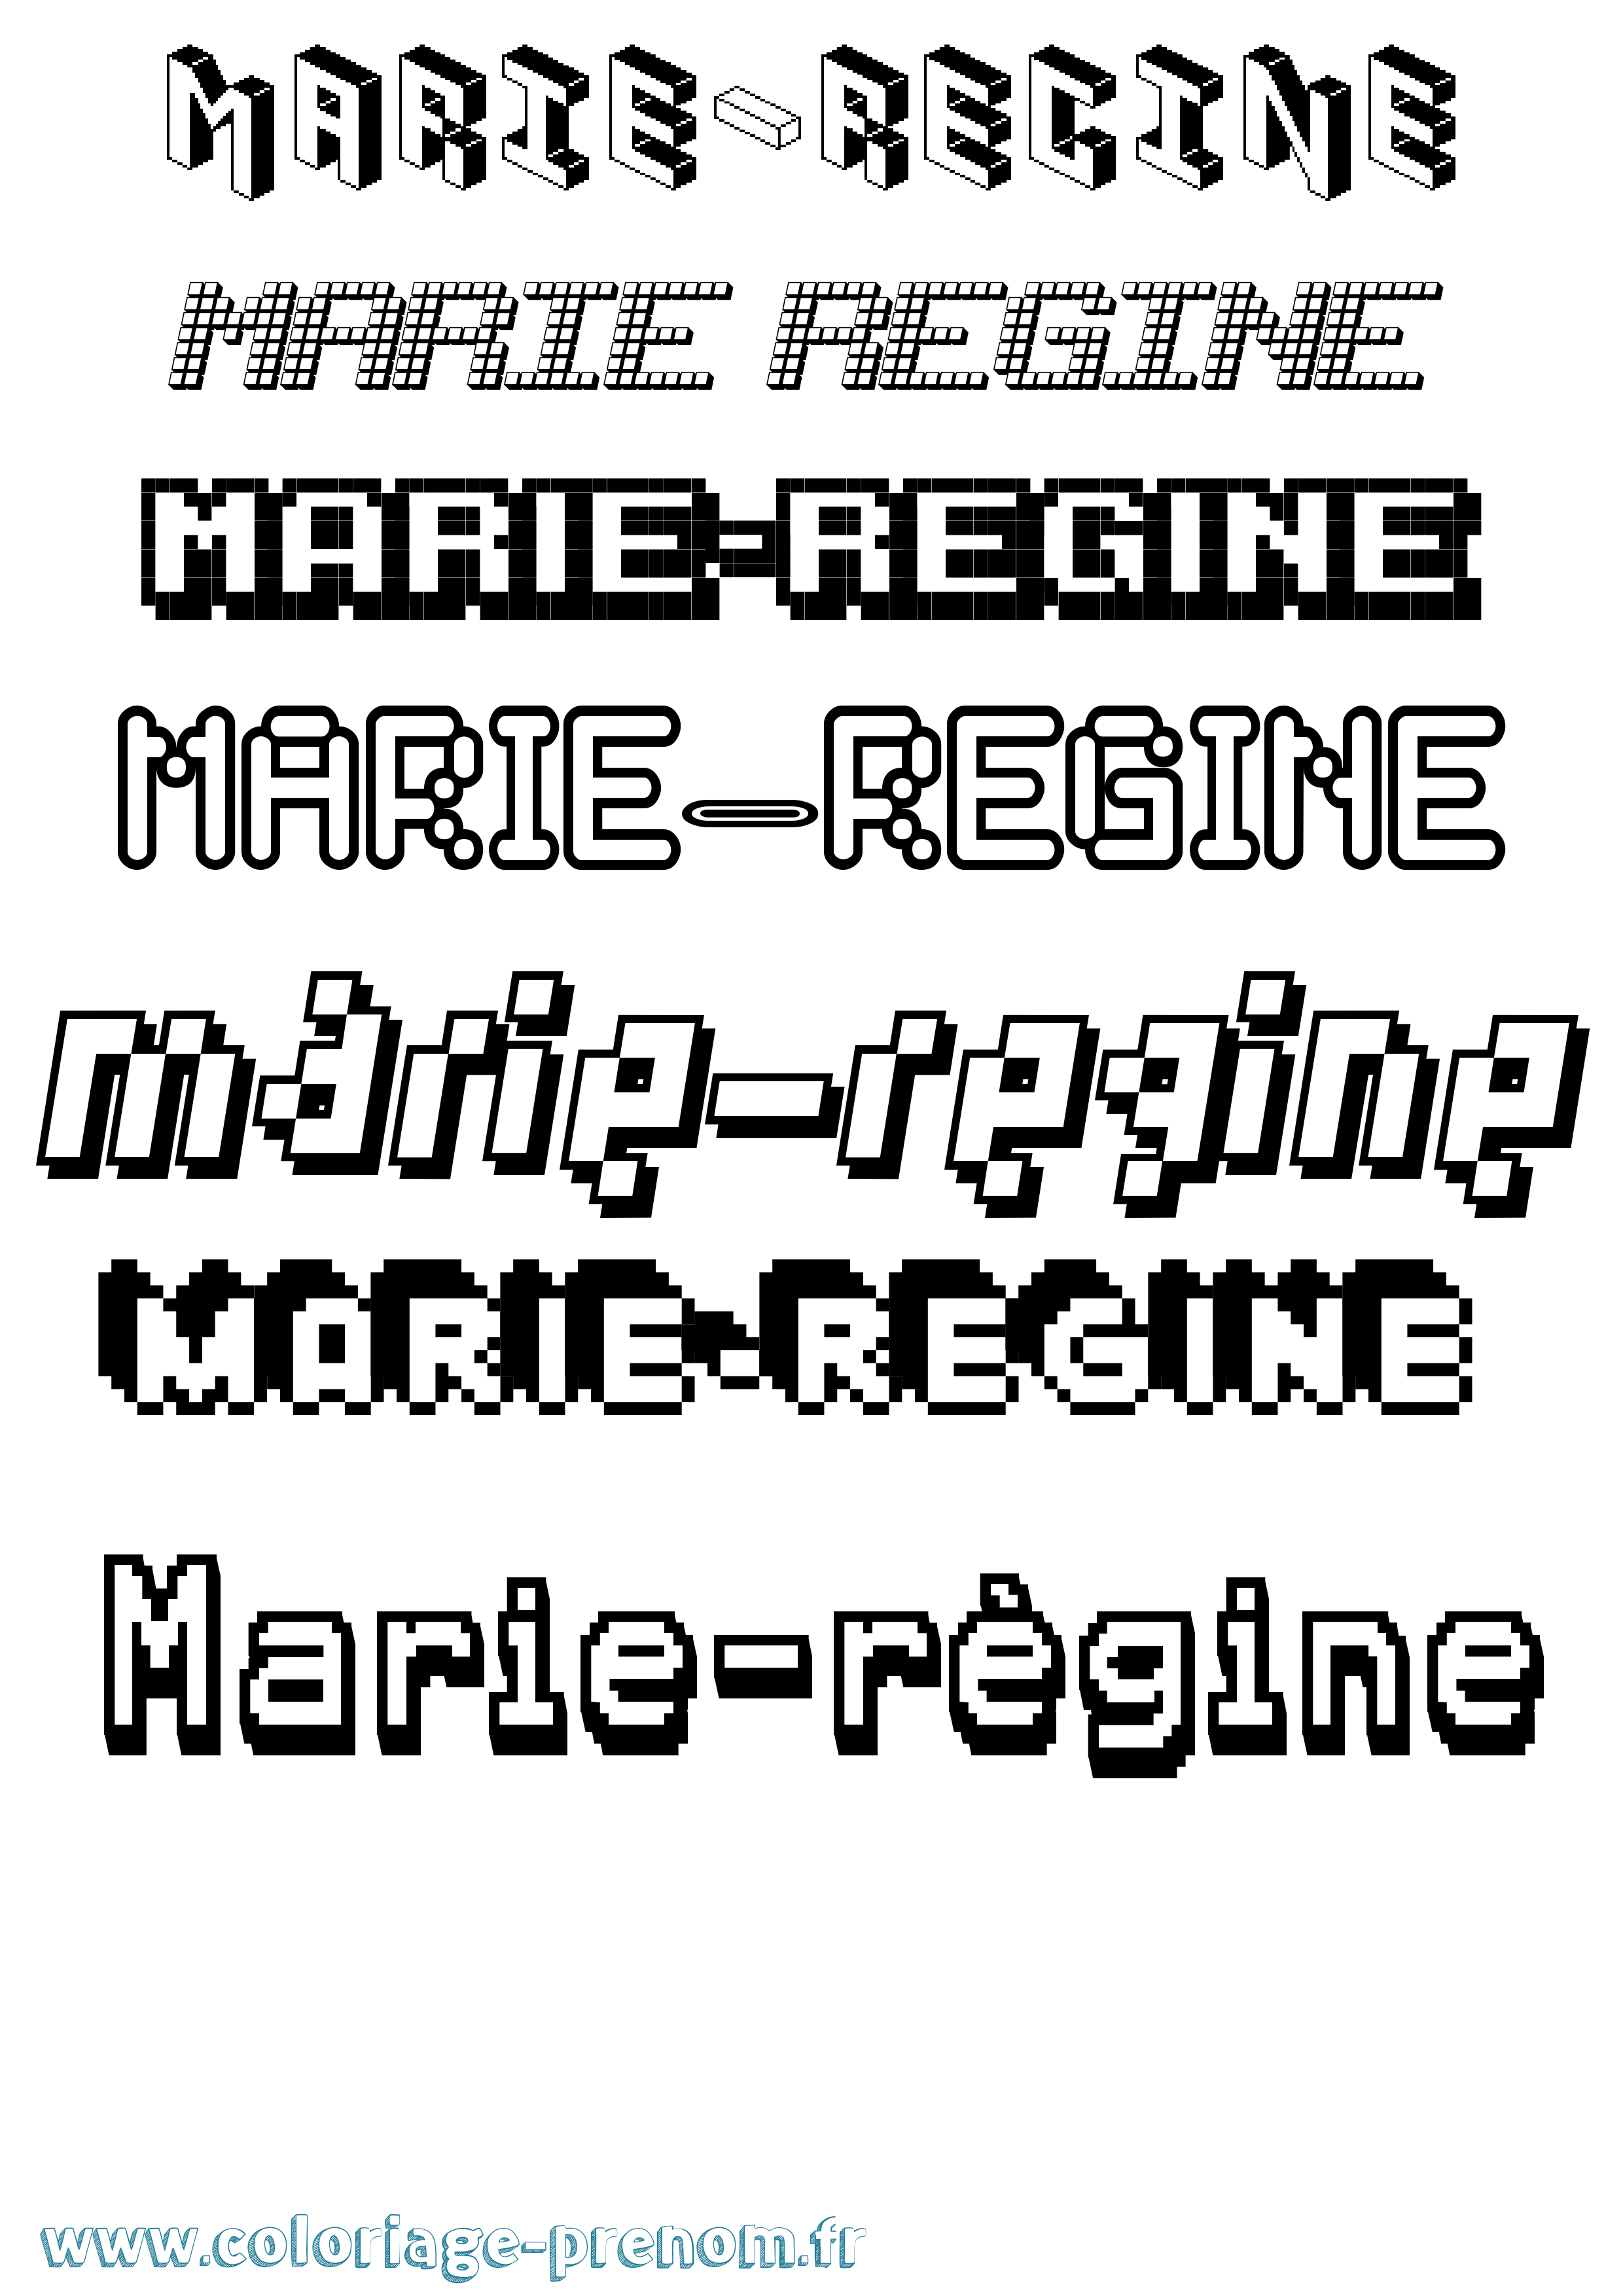 Coloriage prénom Marie-Régine Pixel